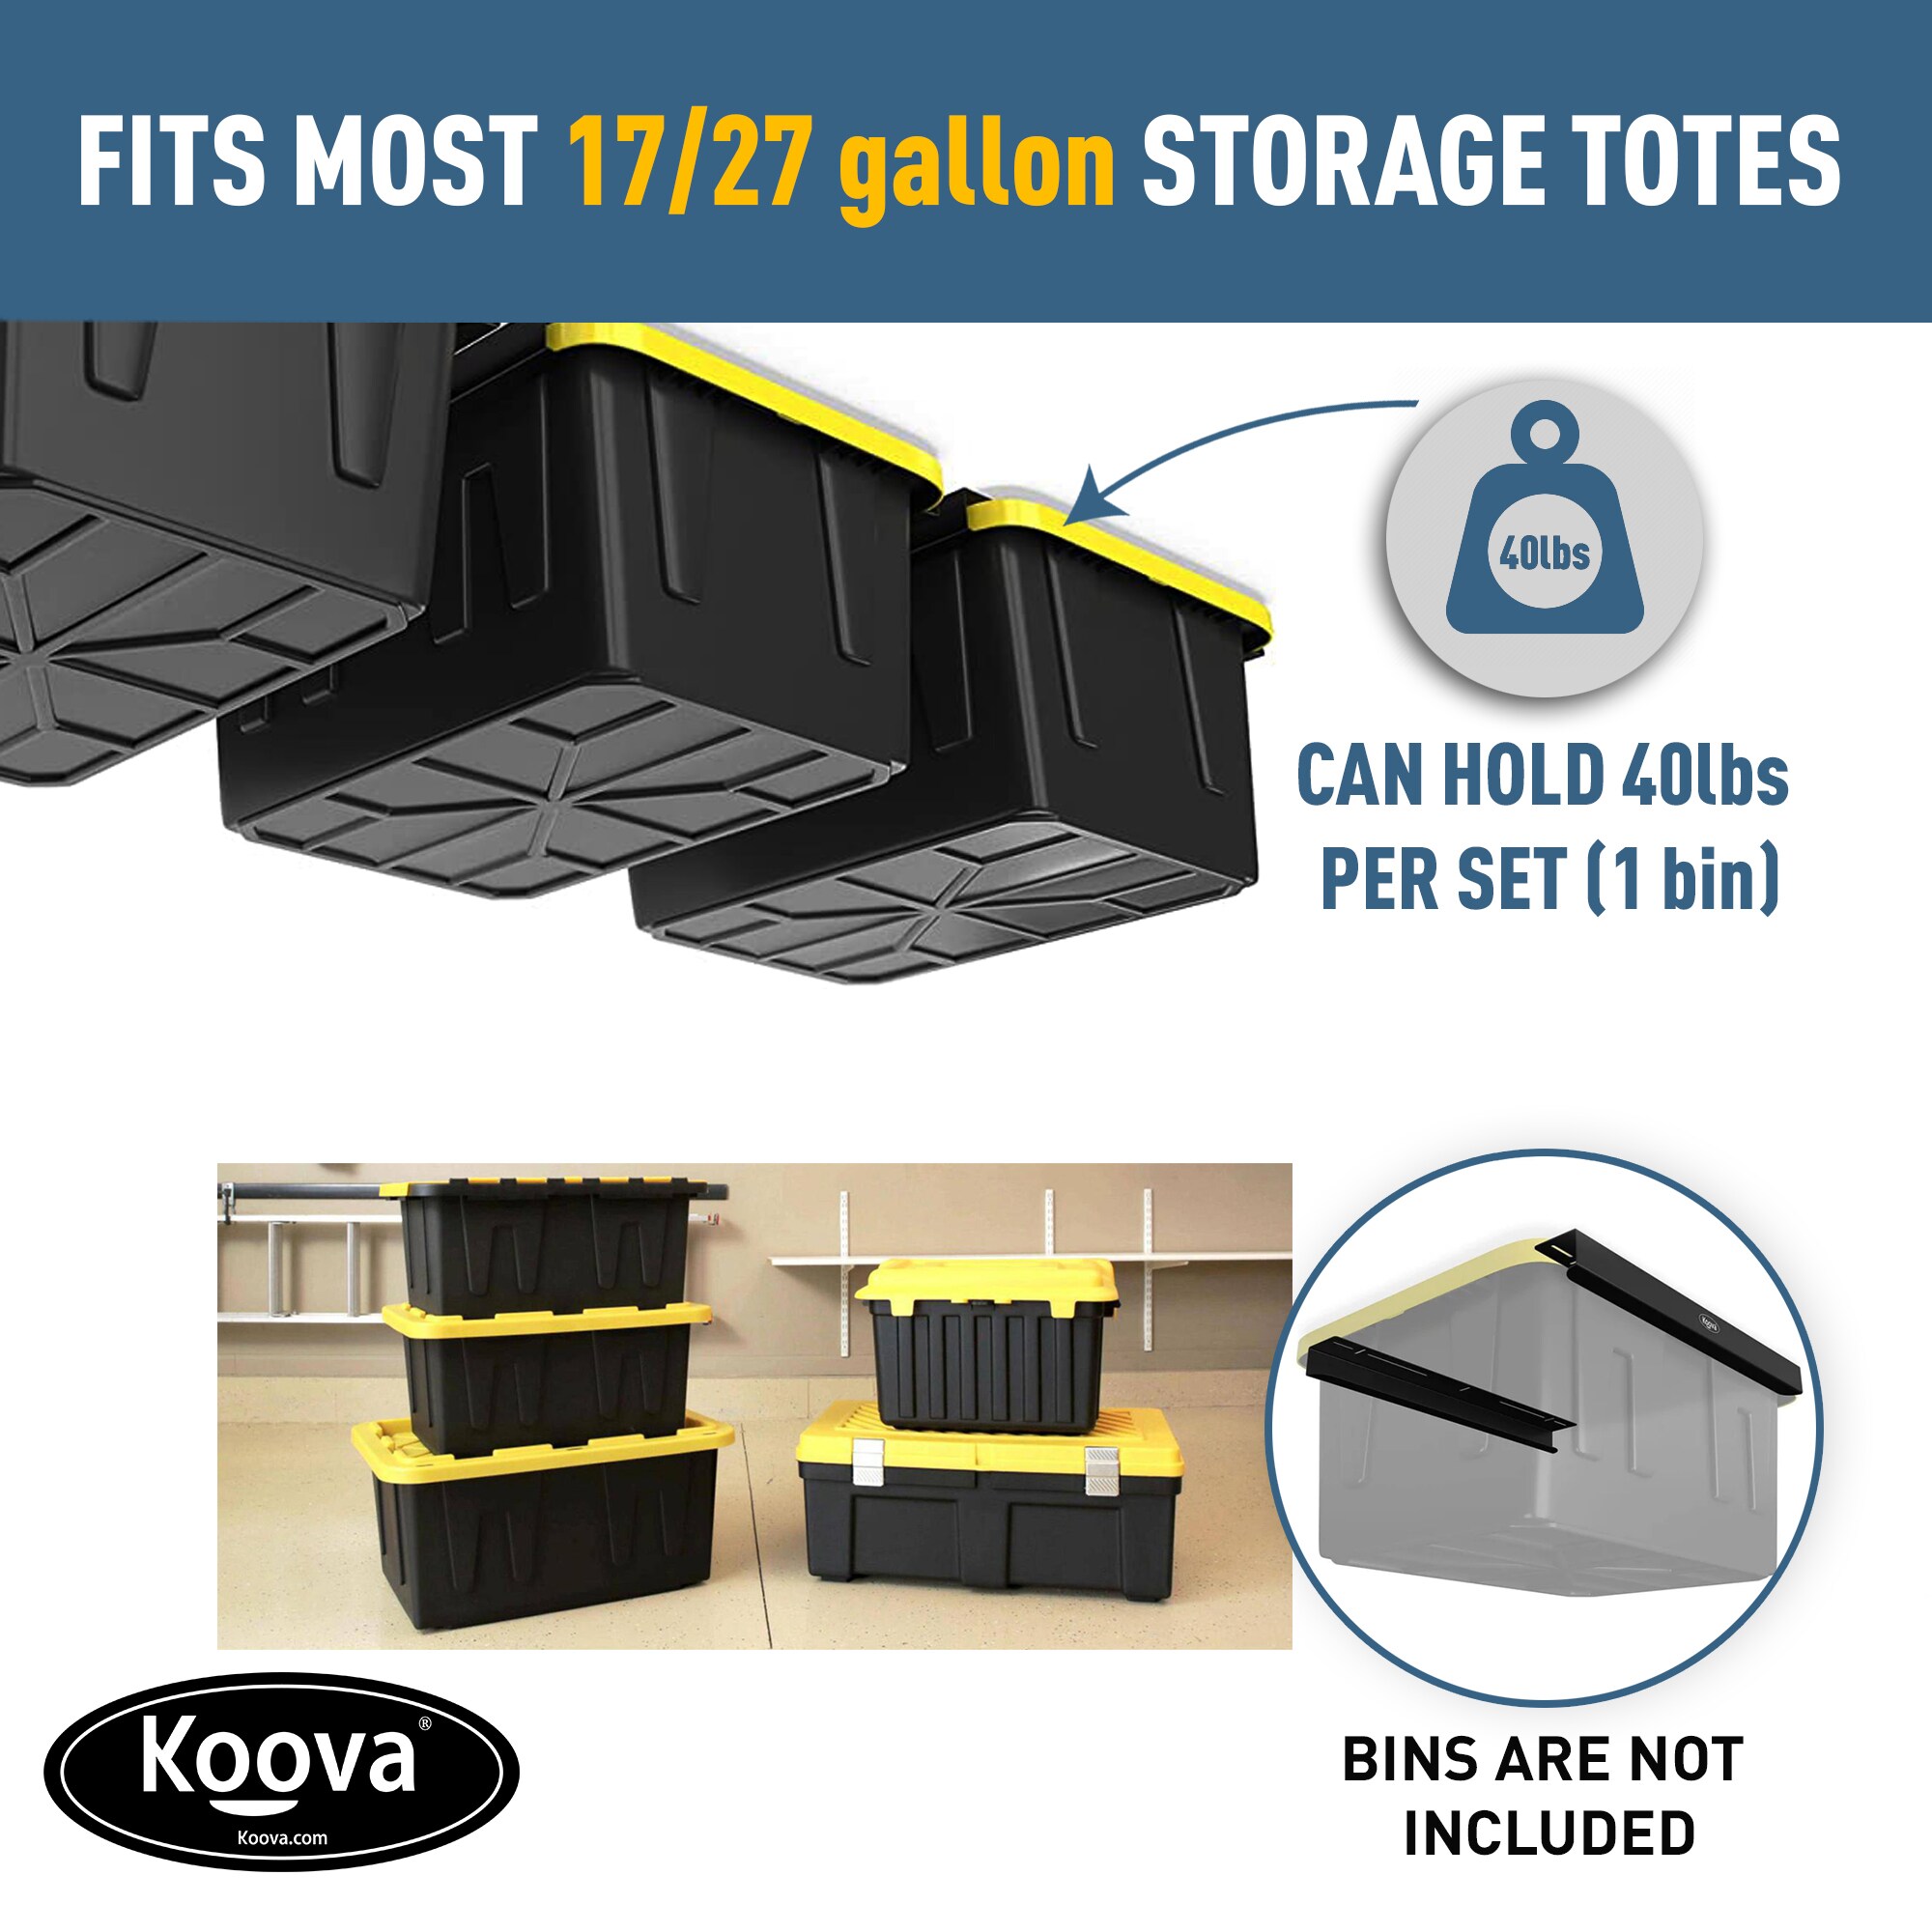 Koova Overhead Storage Bin Rail System (4 Sets)